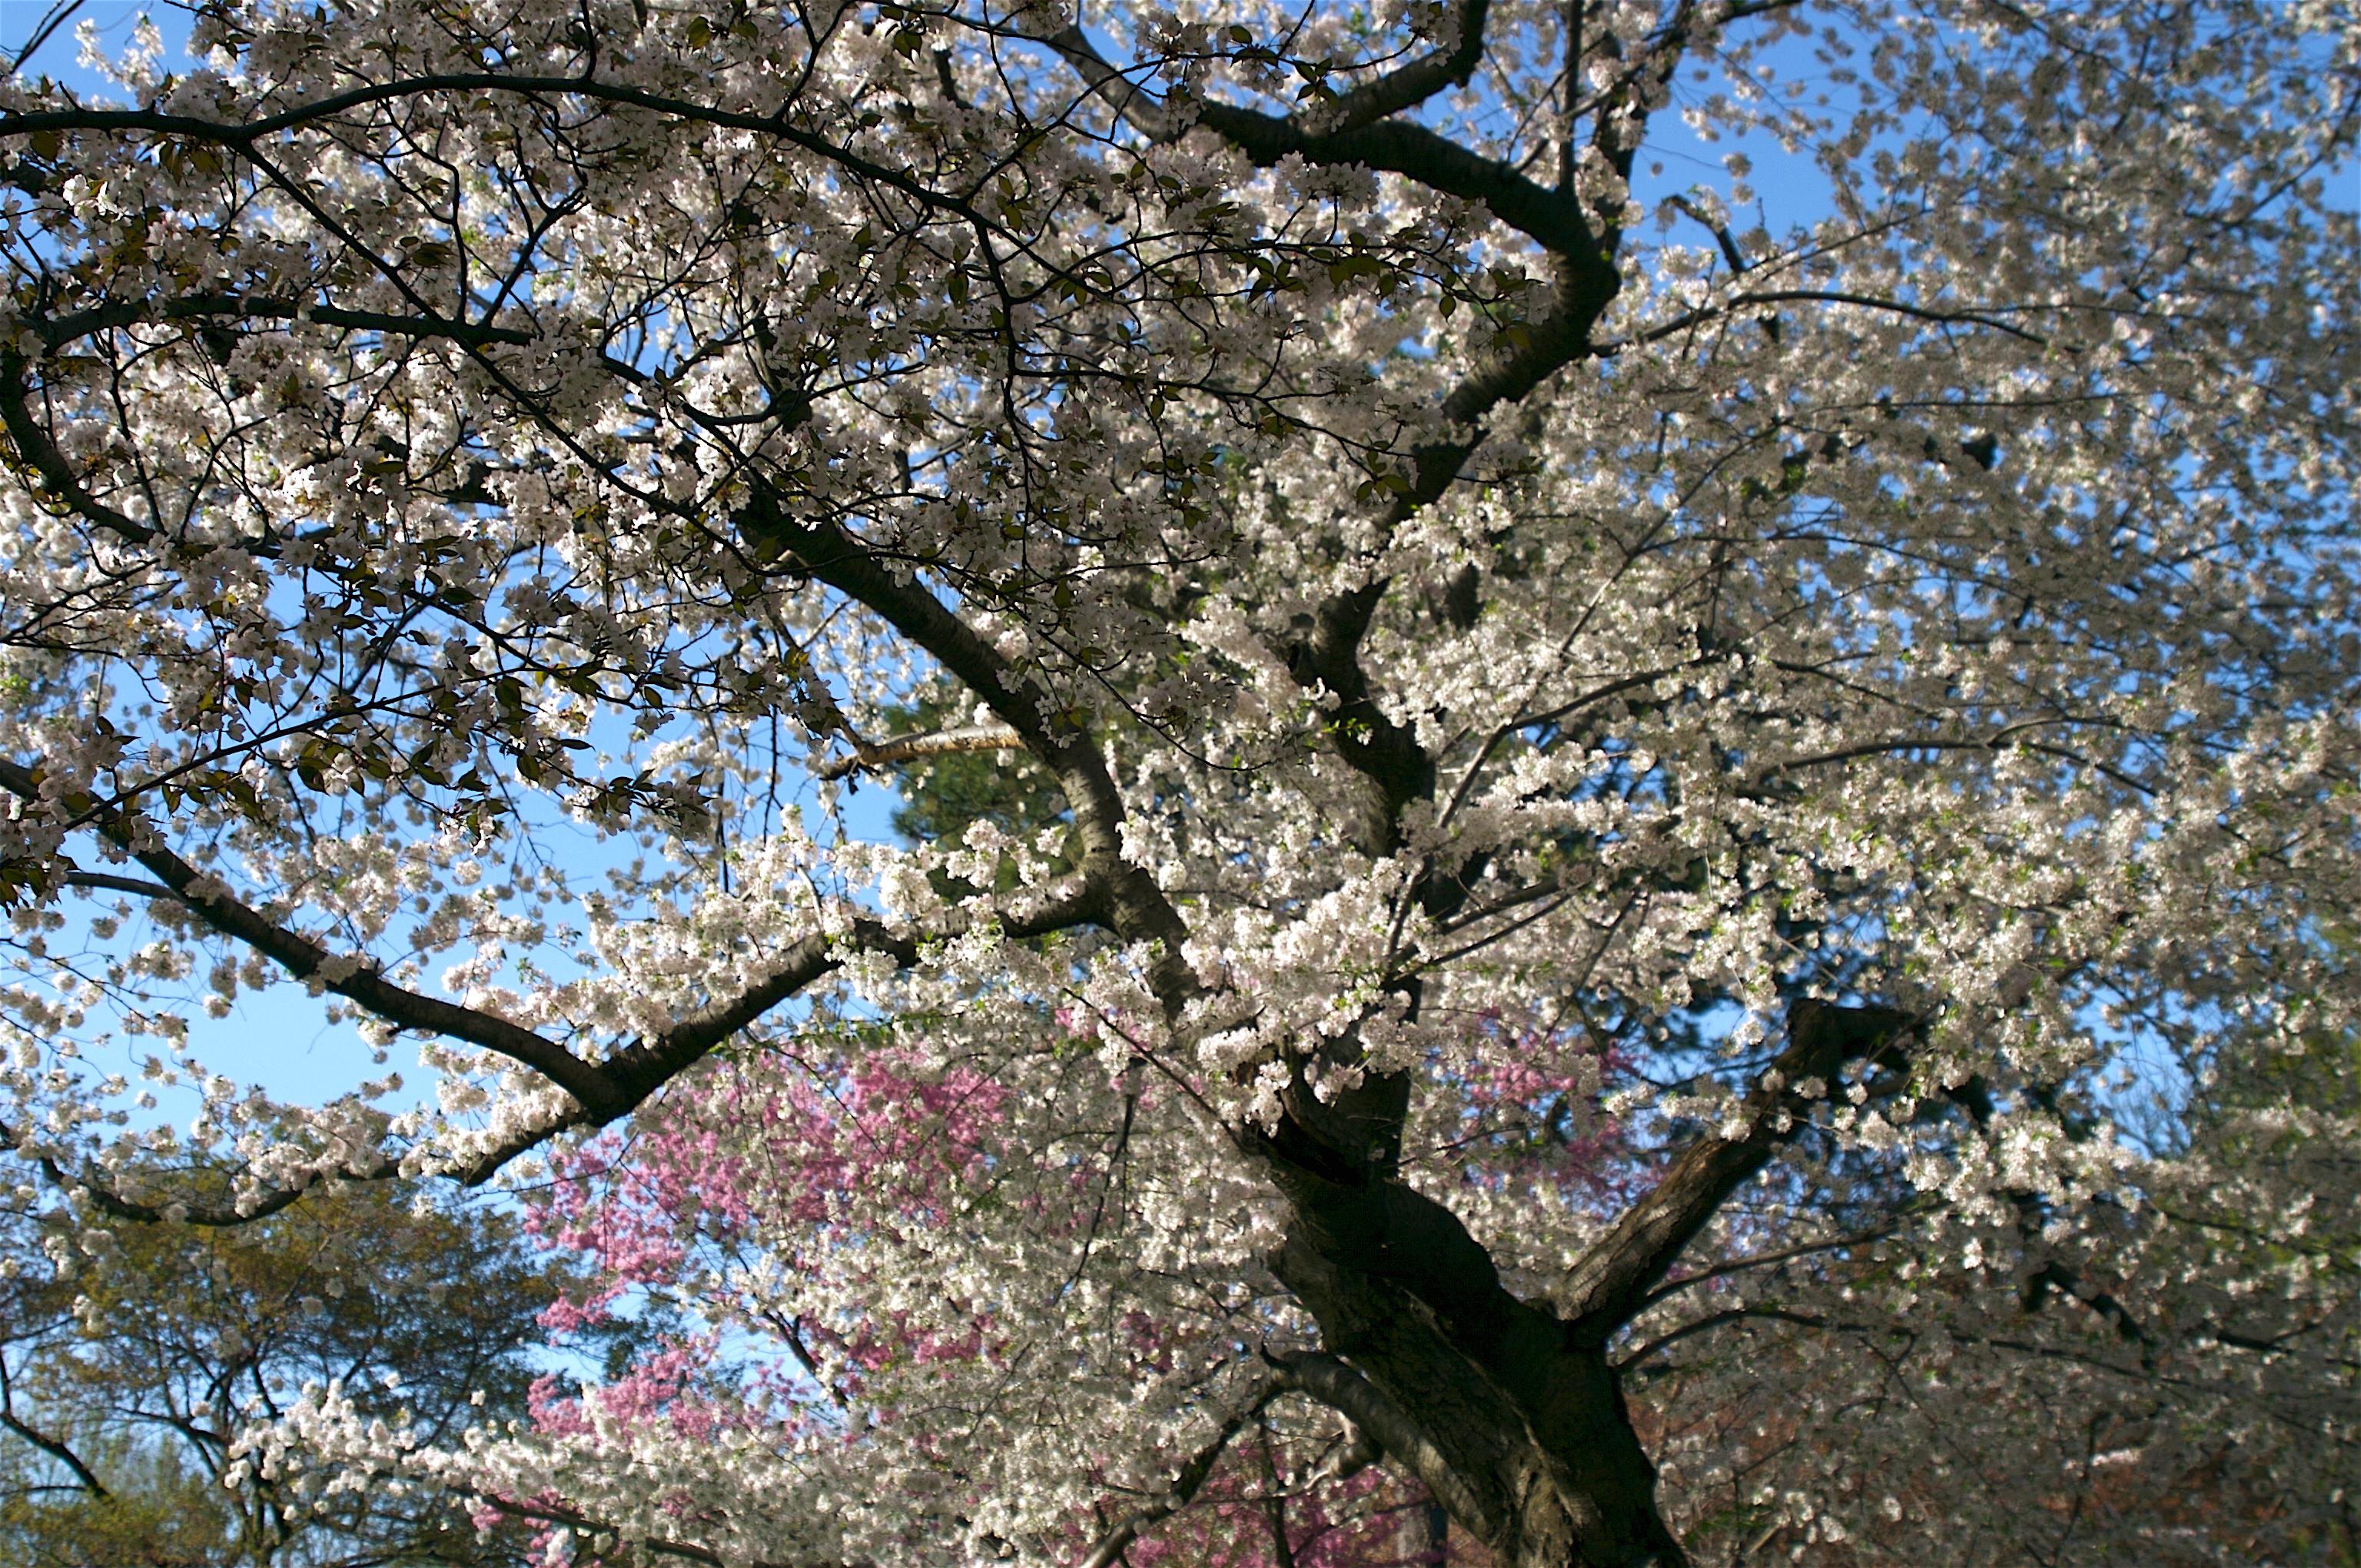 Vanessa Liberati Landscape Photograph - The Cherry Blossom, Archival Pigment Print on Watercolor Paper 16x20"  